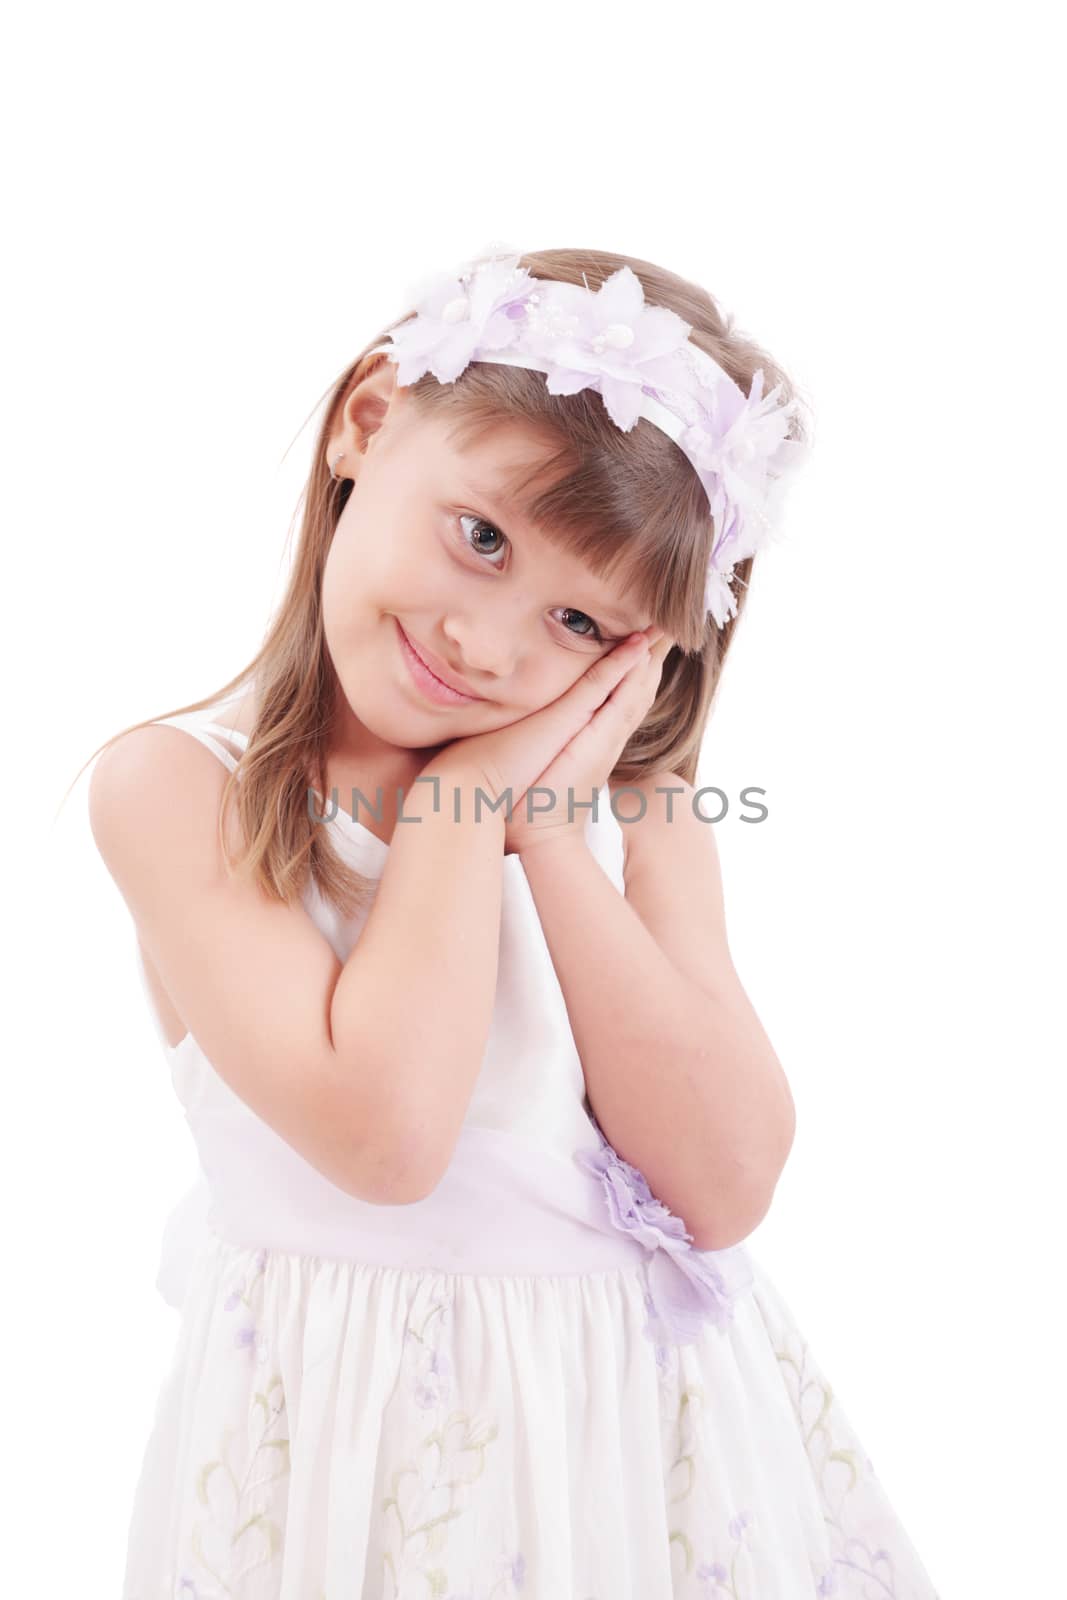 Portrait of cute smiling little girl by dacasdo